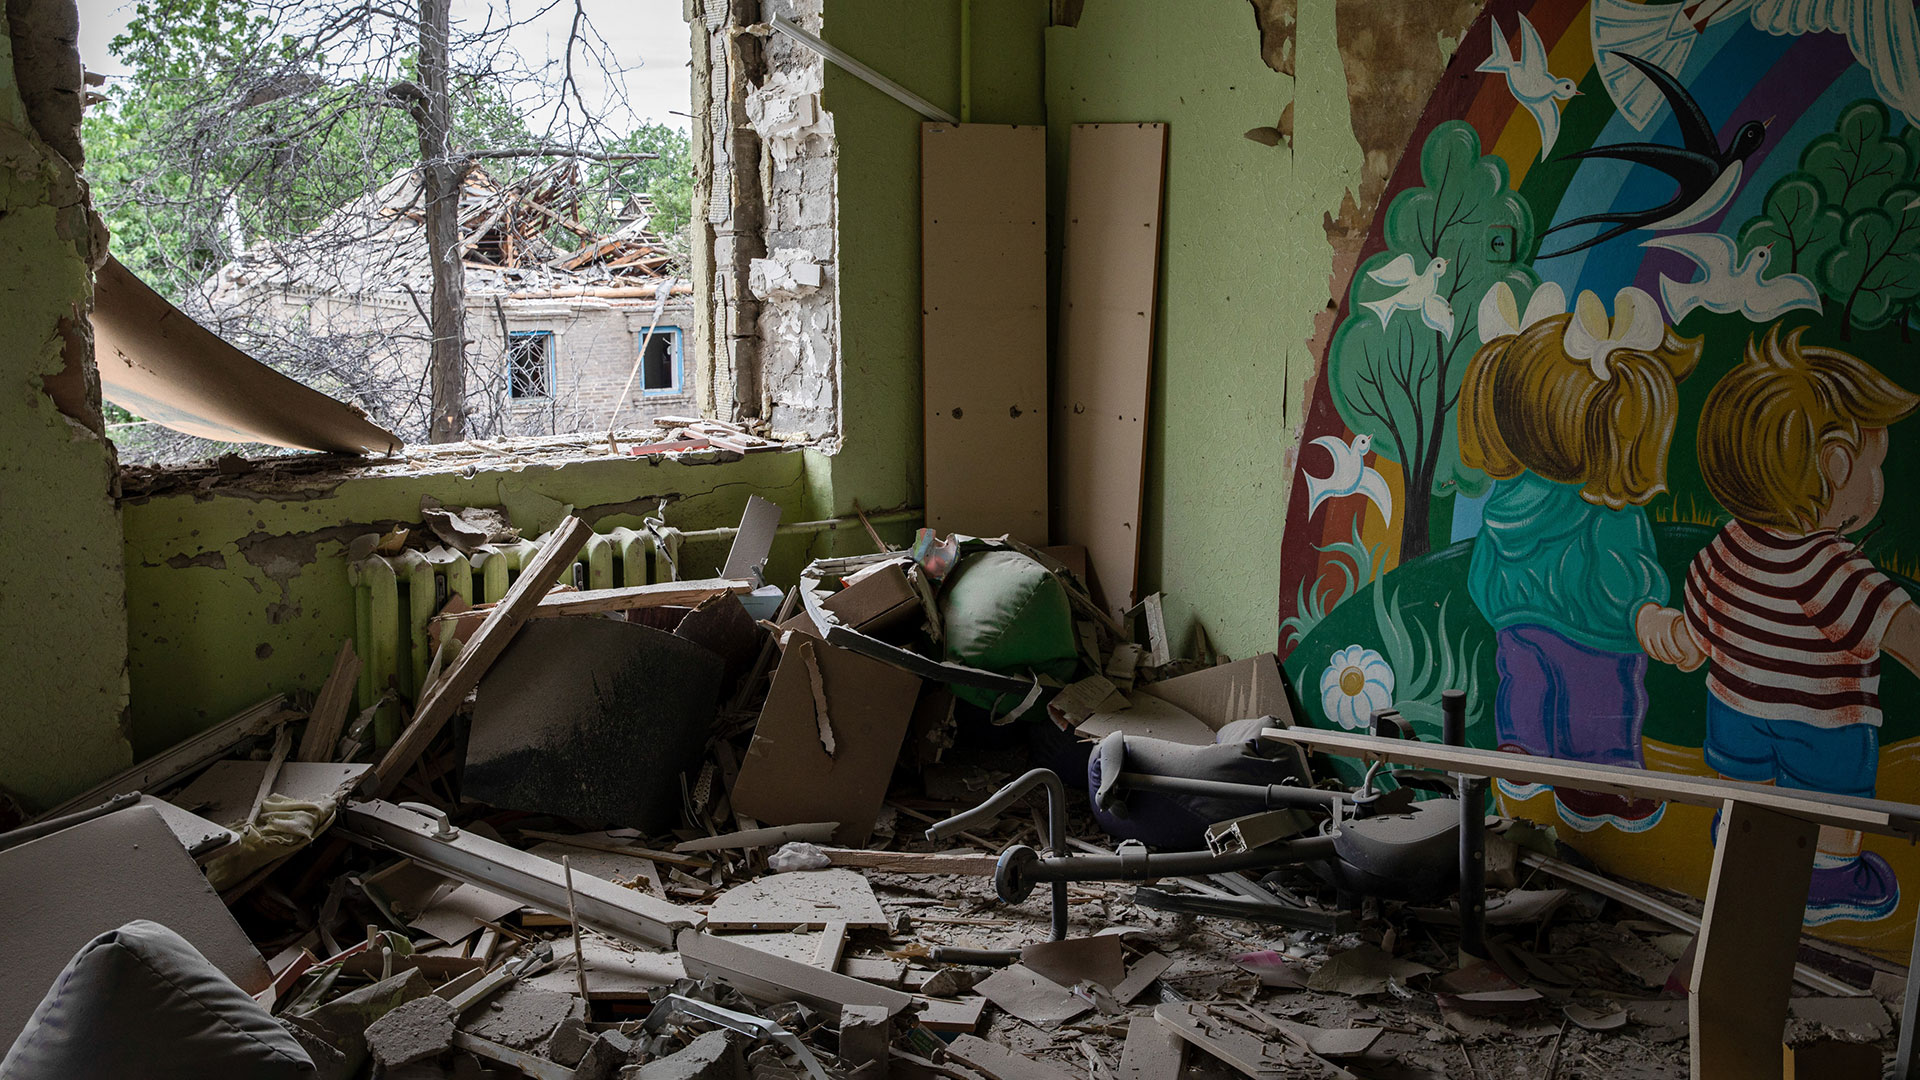 zu sehen ist ein zerstörter Klassenraum in der Ukraine